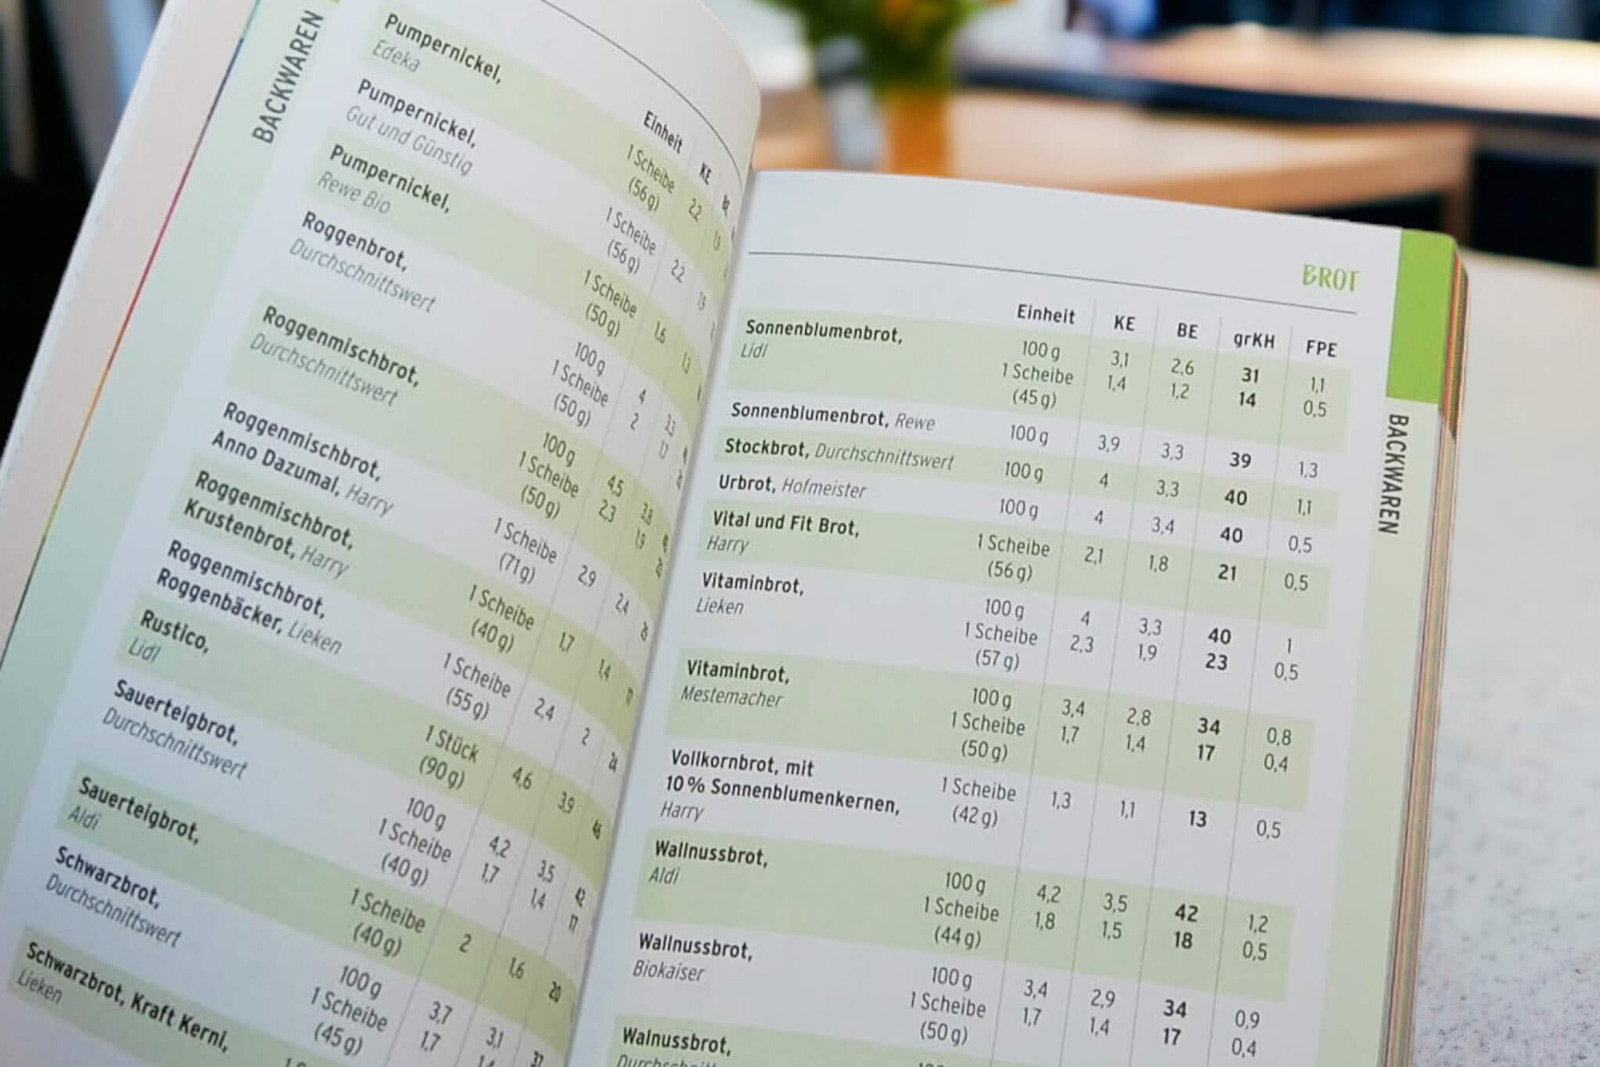 EIn Blick in eine Lebensmittel-Tabelle des WETID-Buches